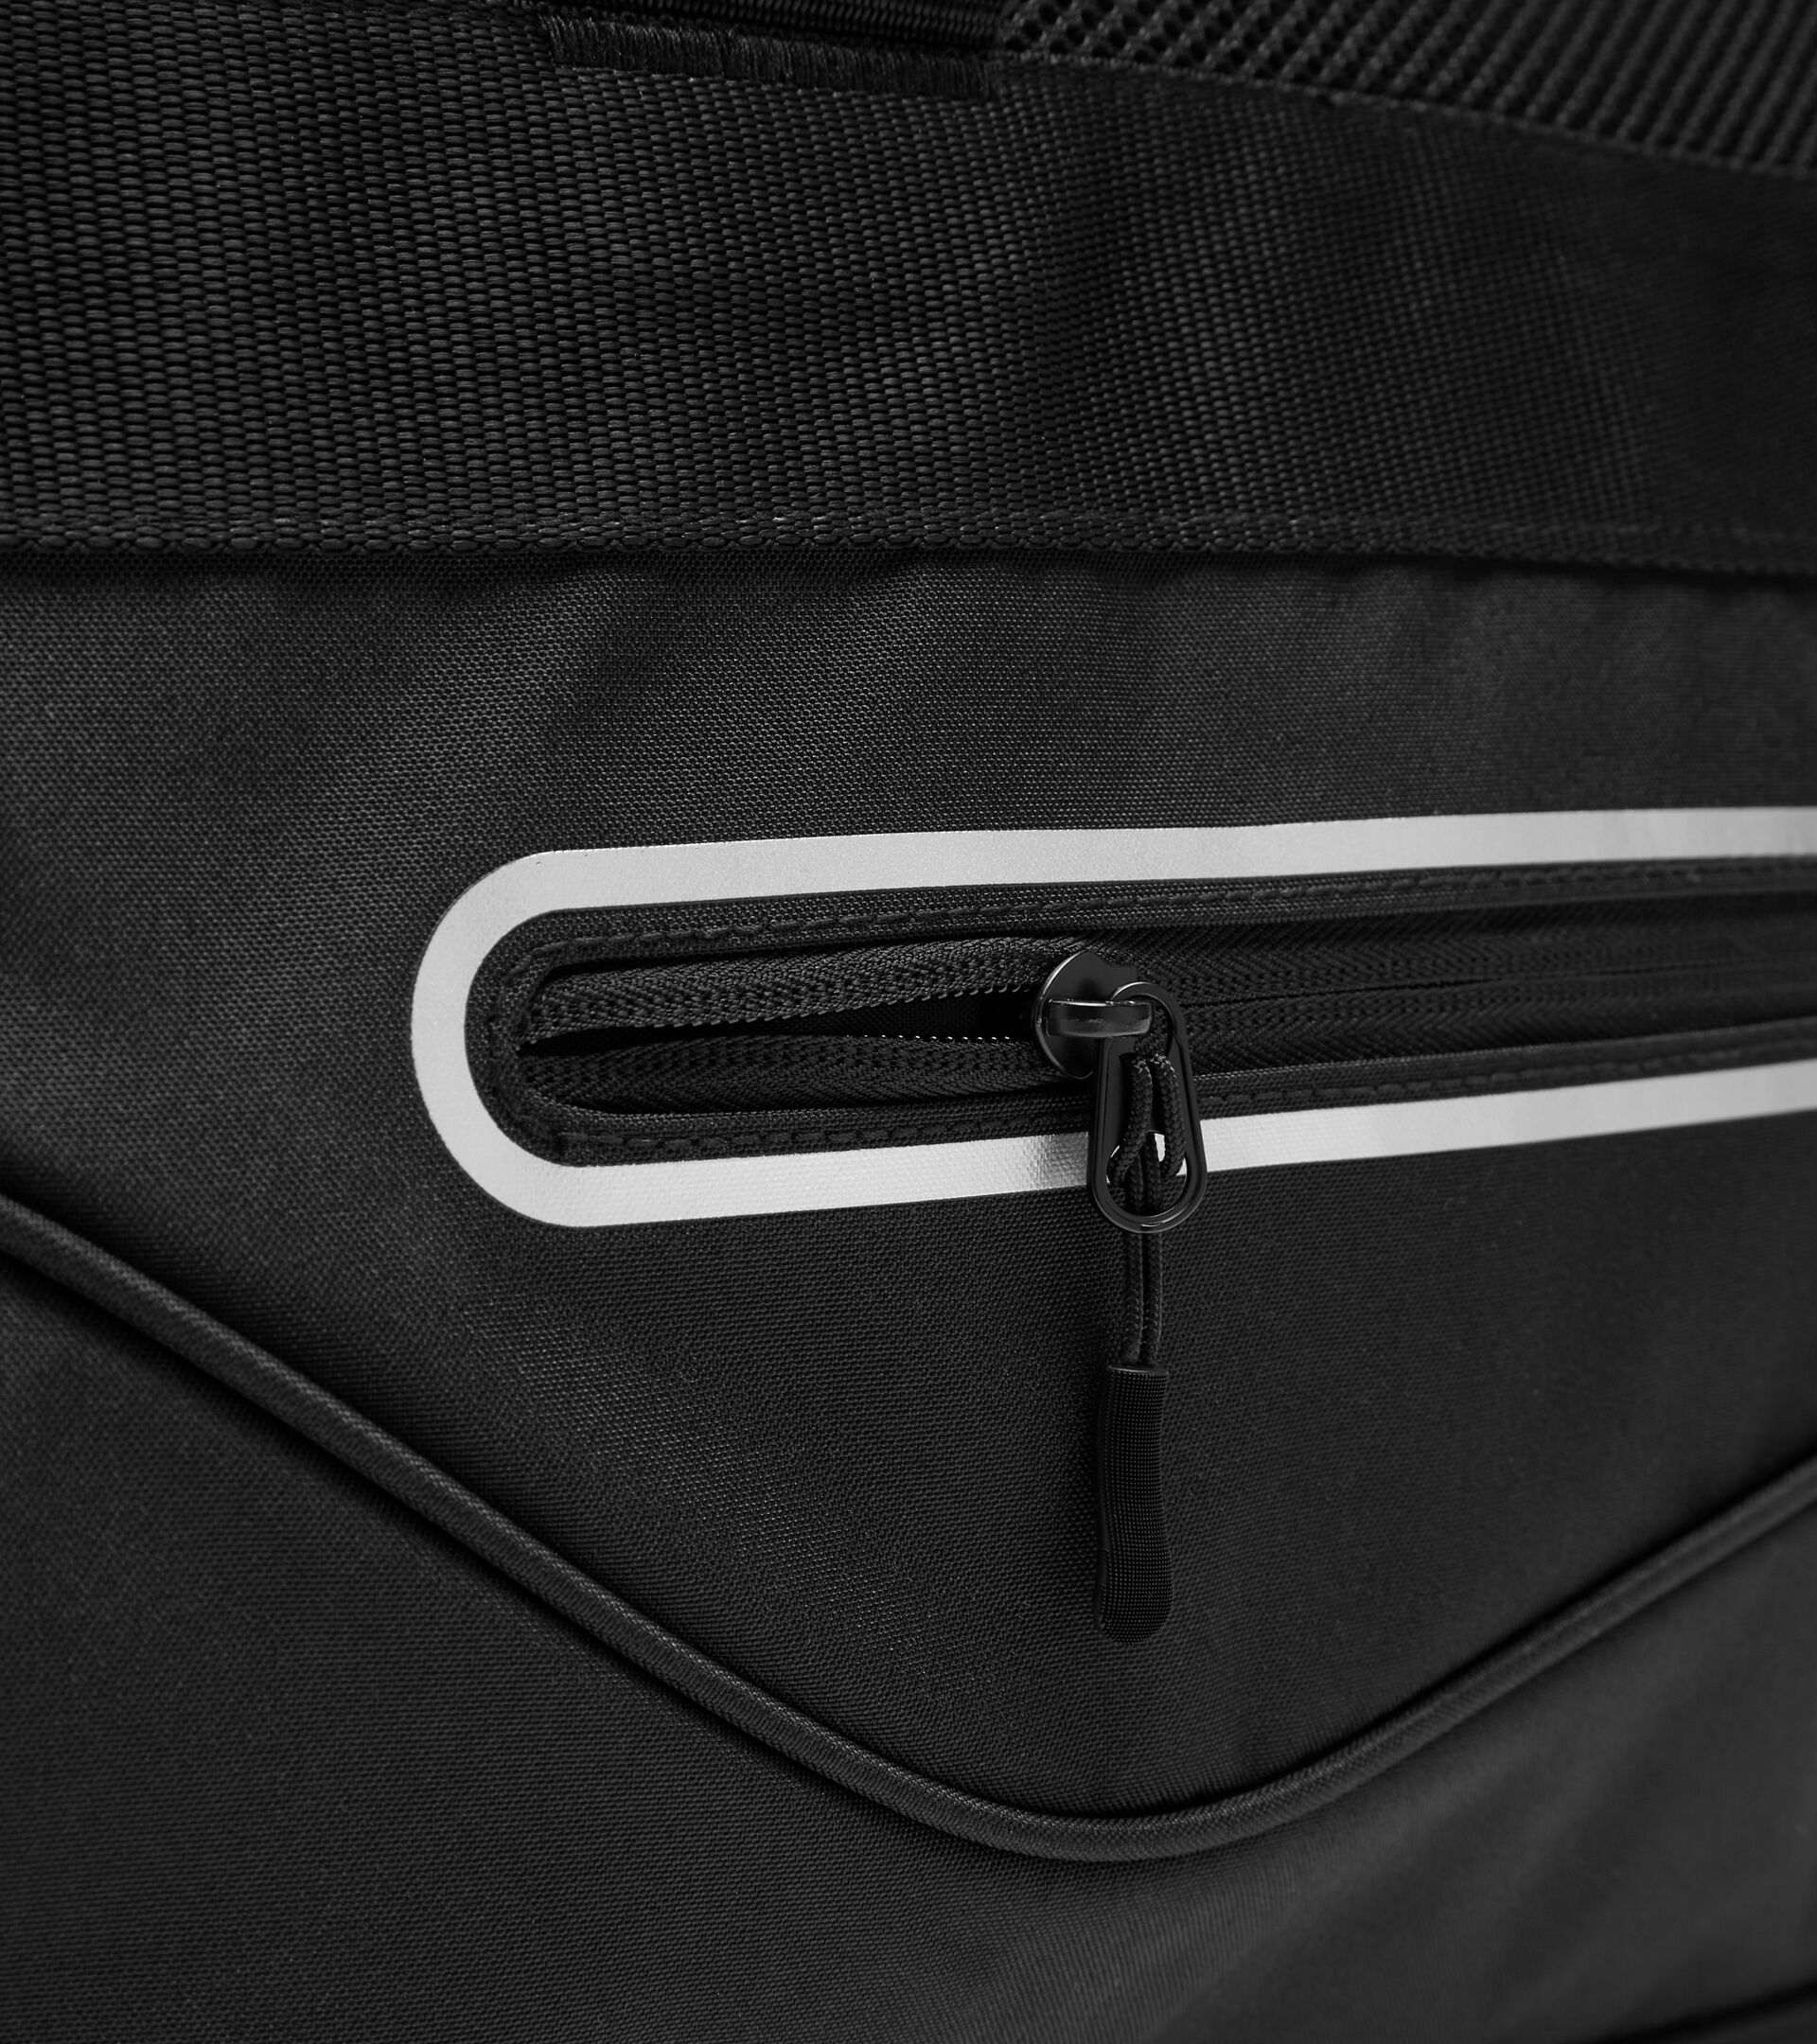 Training bag BAG TENNIS BLACK - Diadora